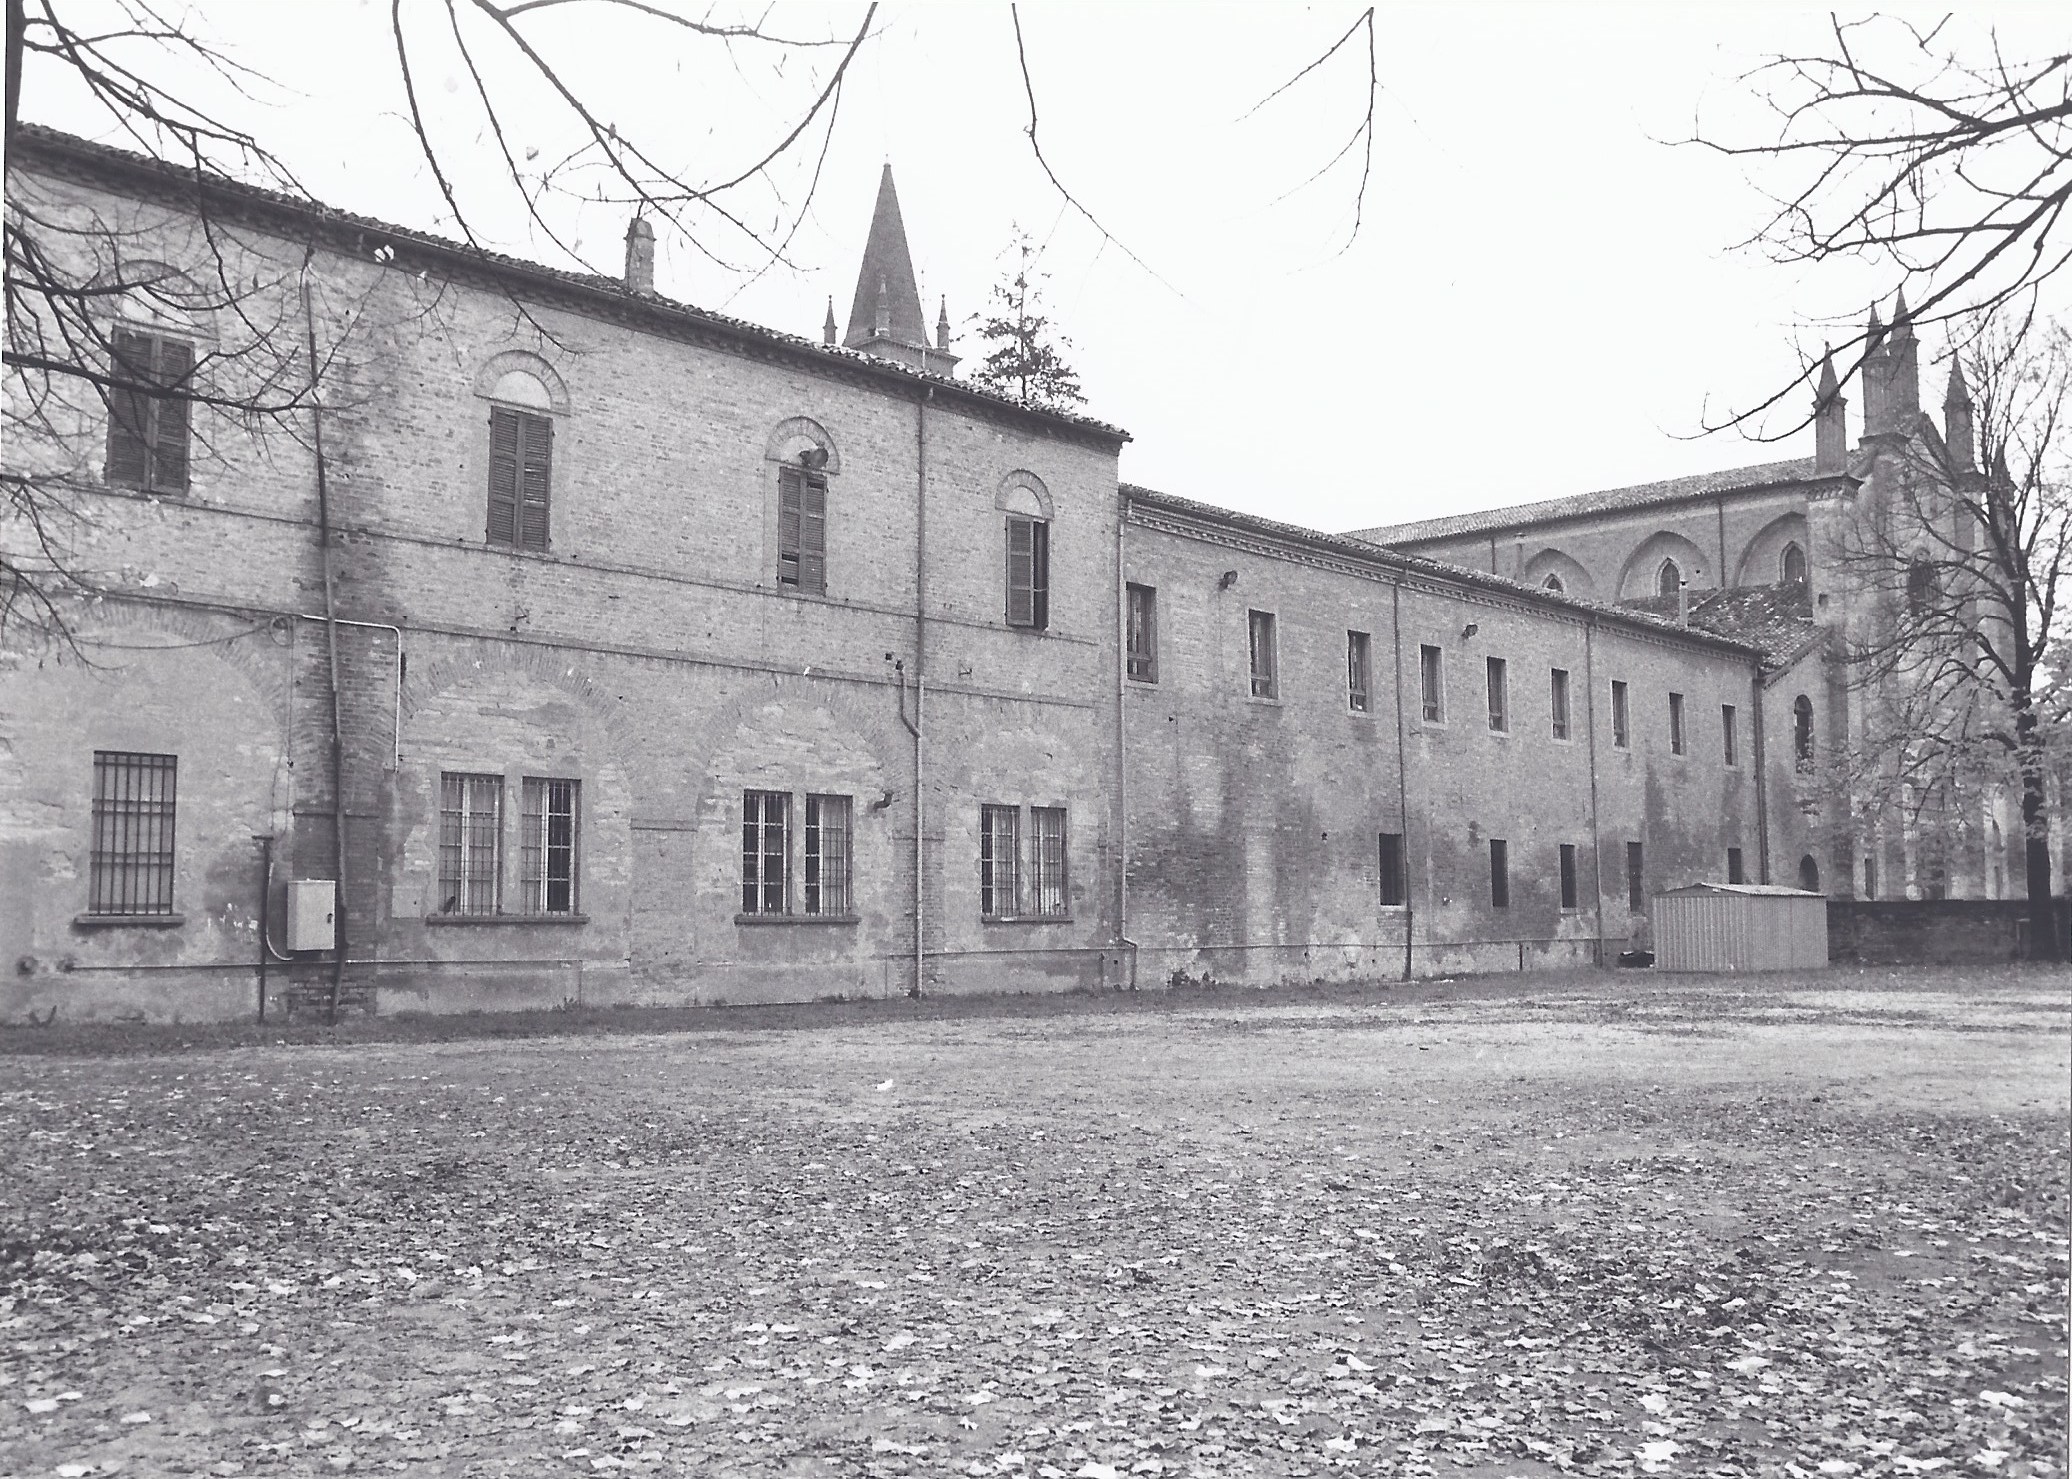 Convento di San Francesco (convento) - Cortemaggiore (PC) 